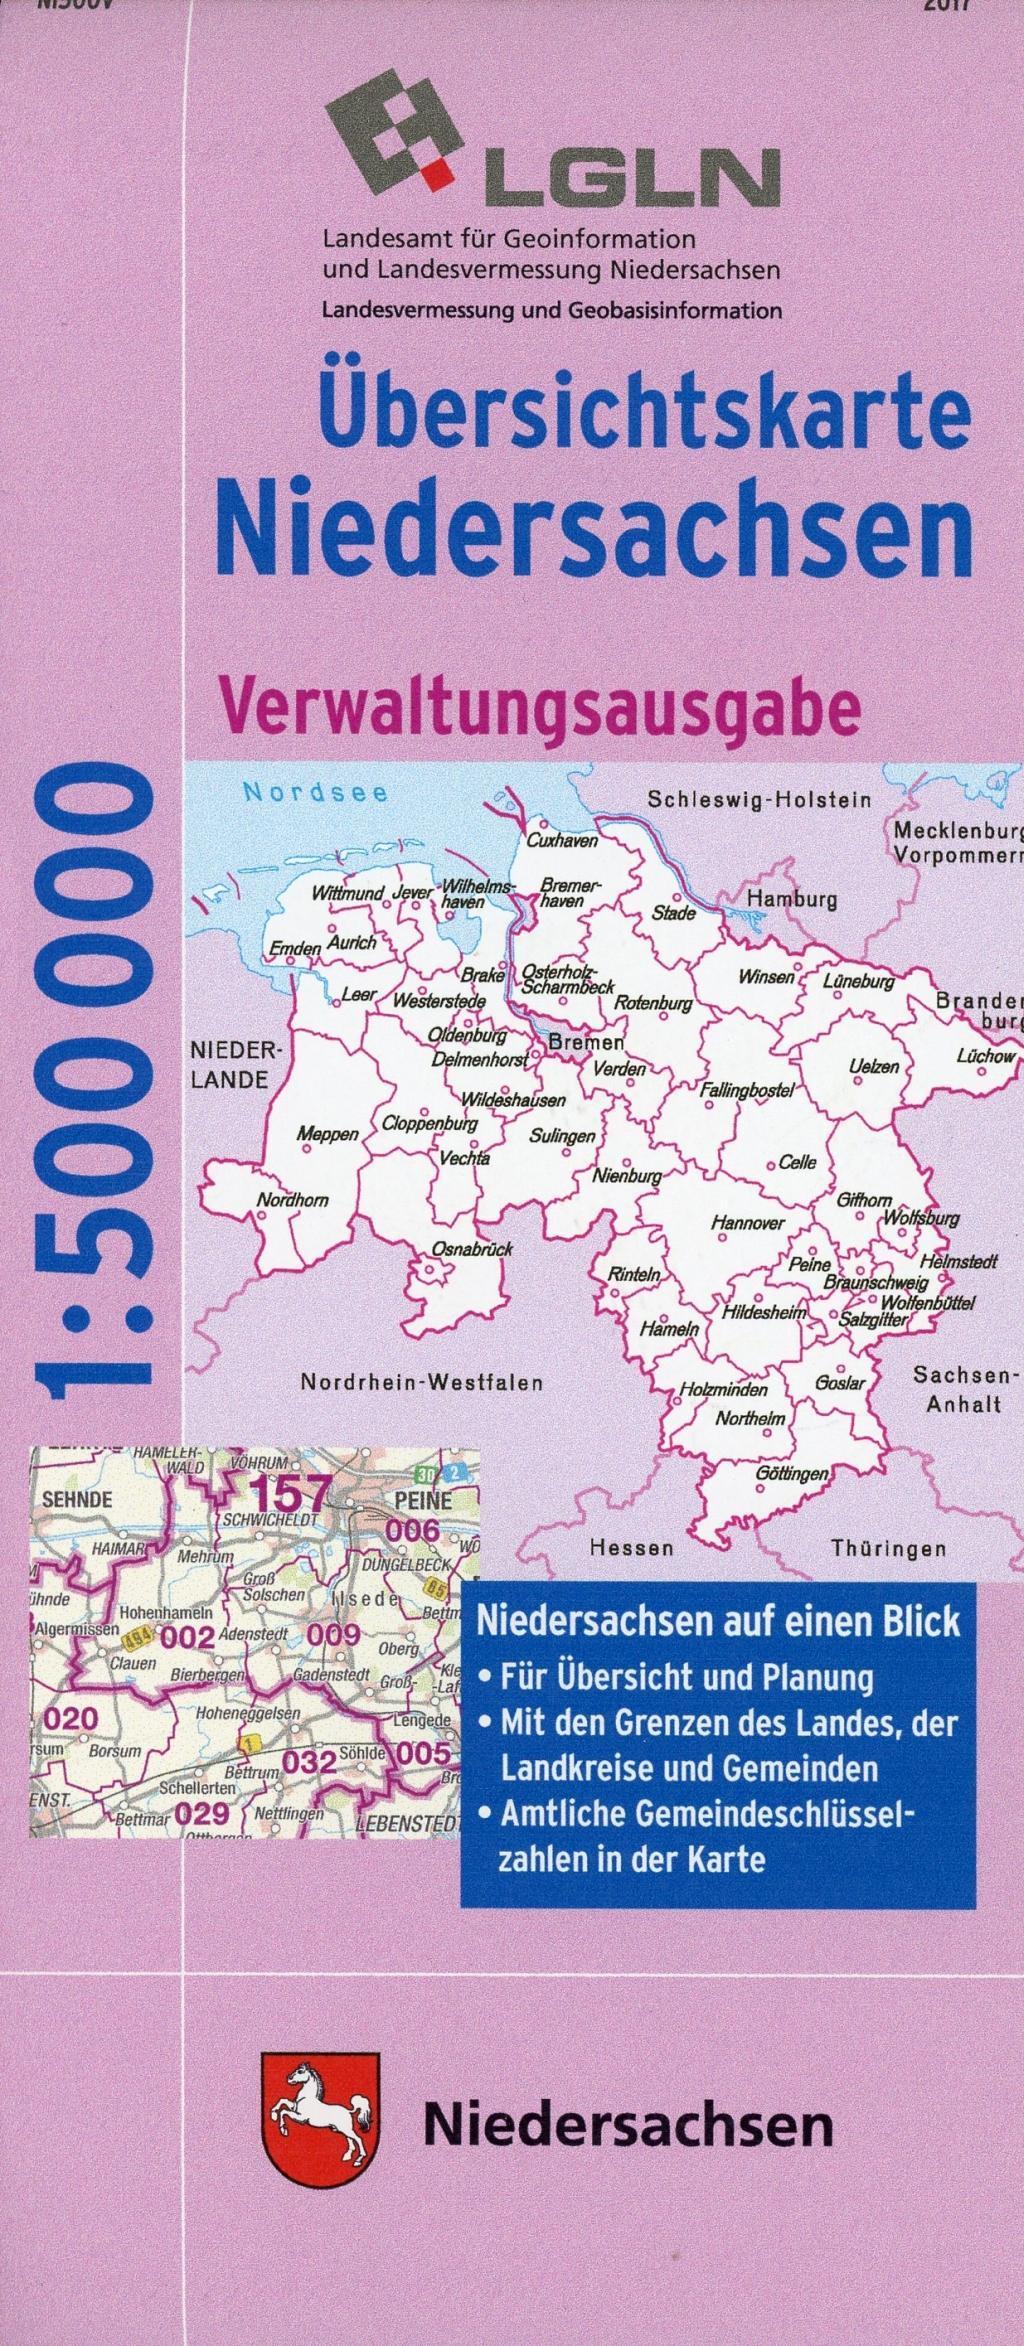 LGN Uebersichtskarte Niedersachsen, Verwaltungsausgabe